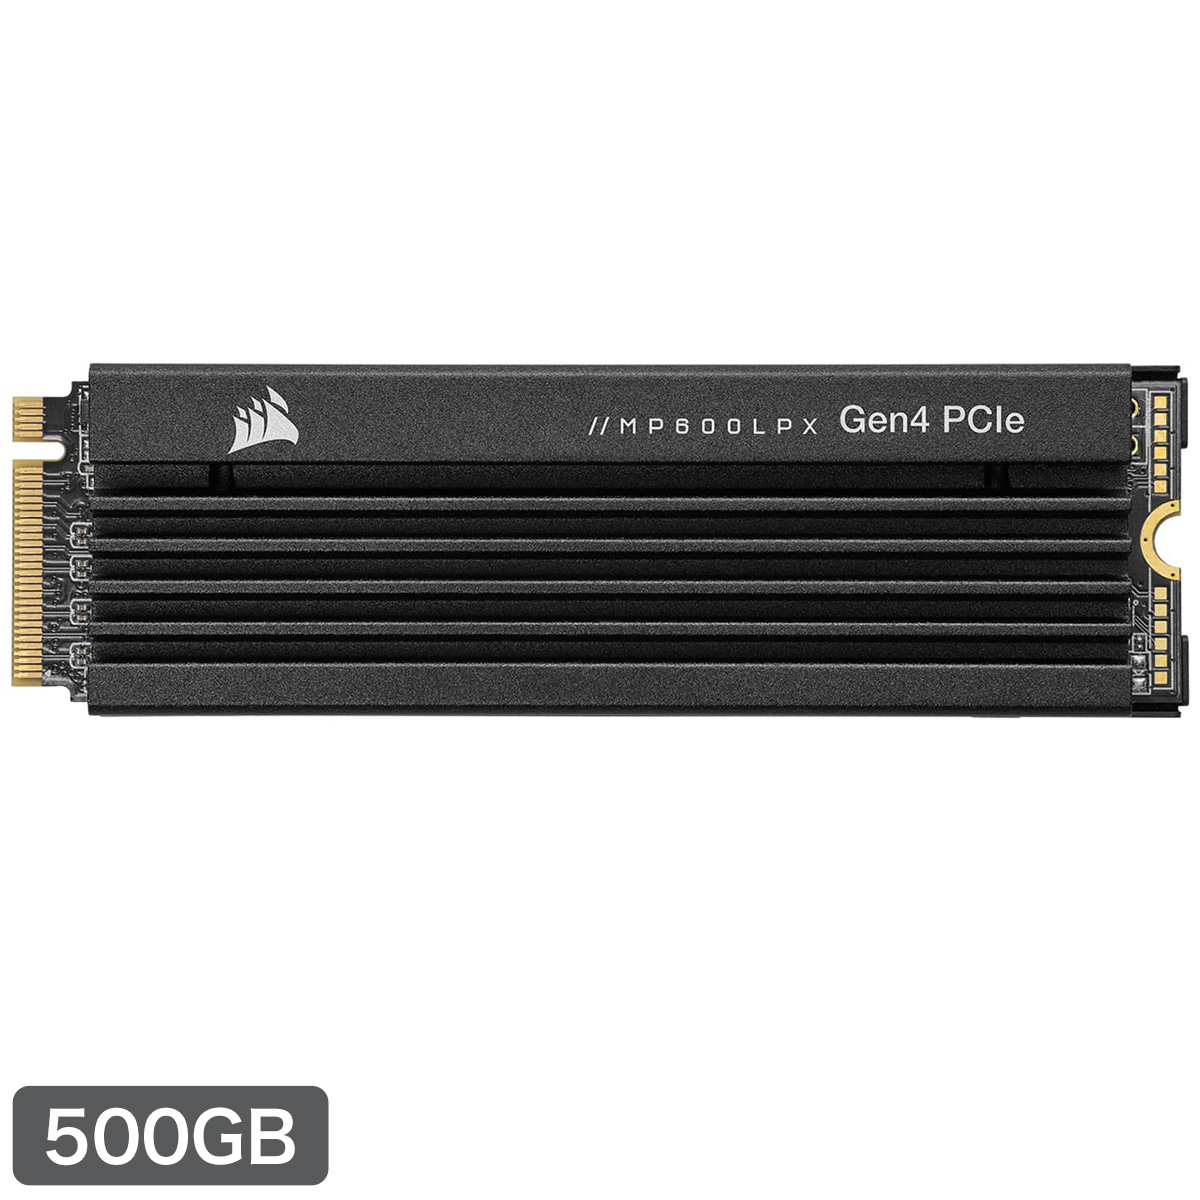 ■SSD MP600 PRO LPX PCIe Gen4 x4 NVMe M.2 500GB